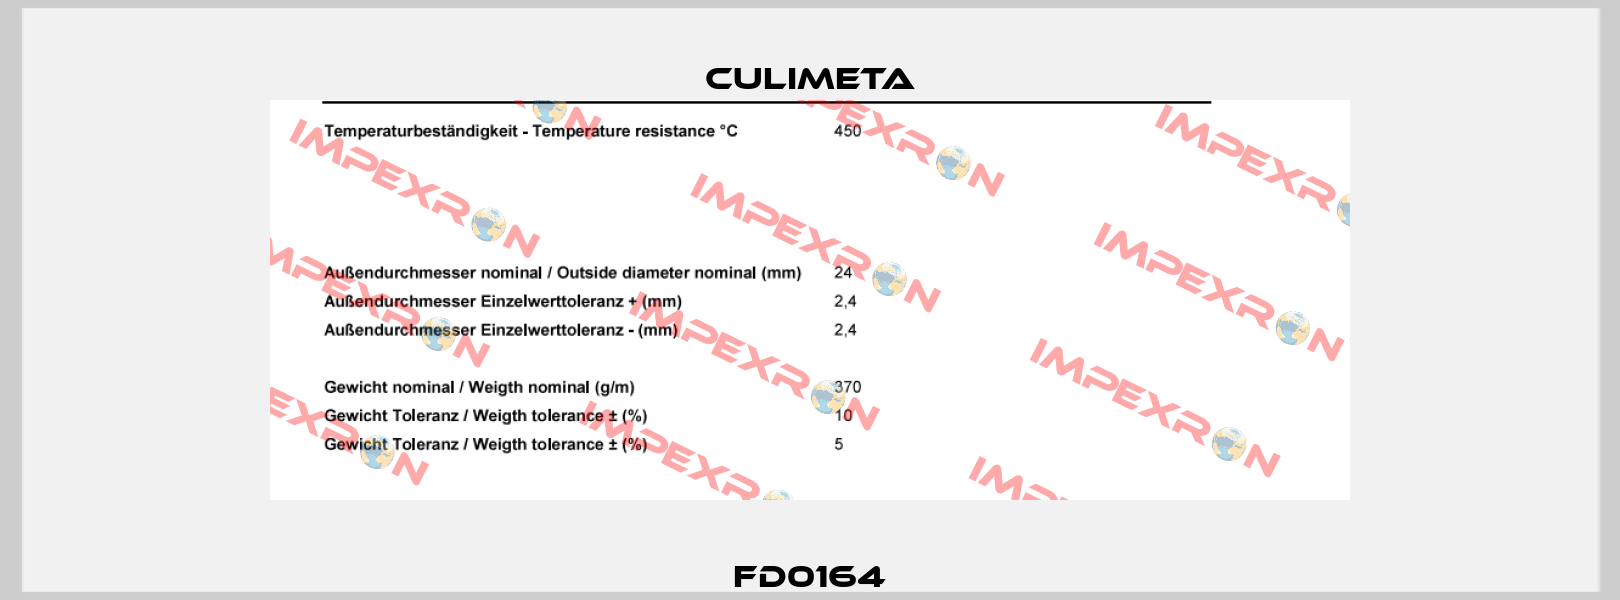 FD0164 Culimeta